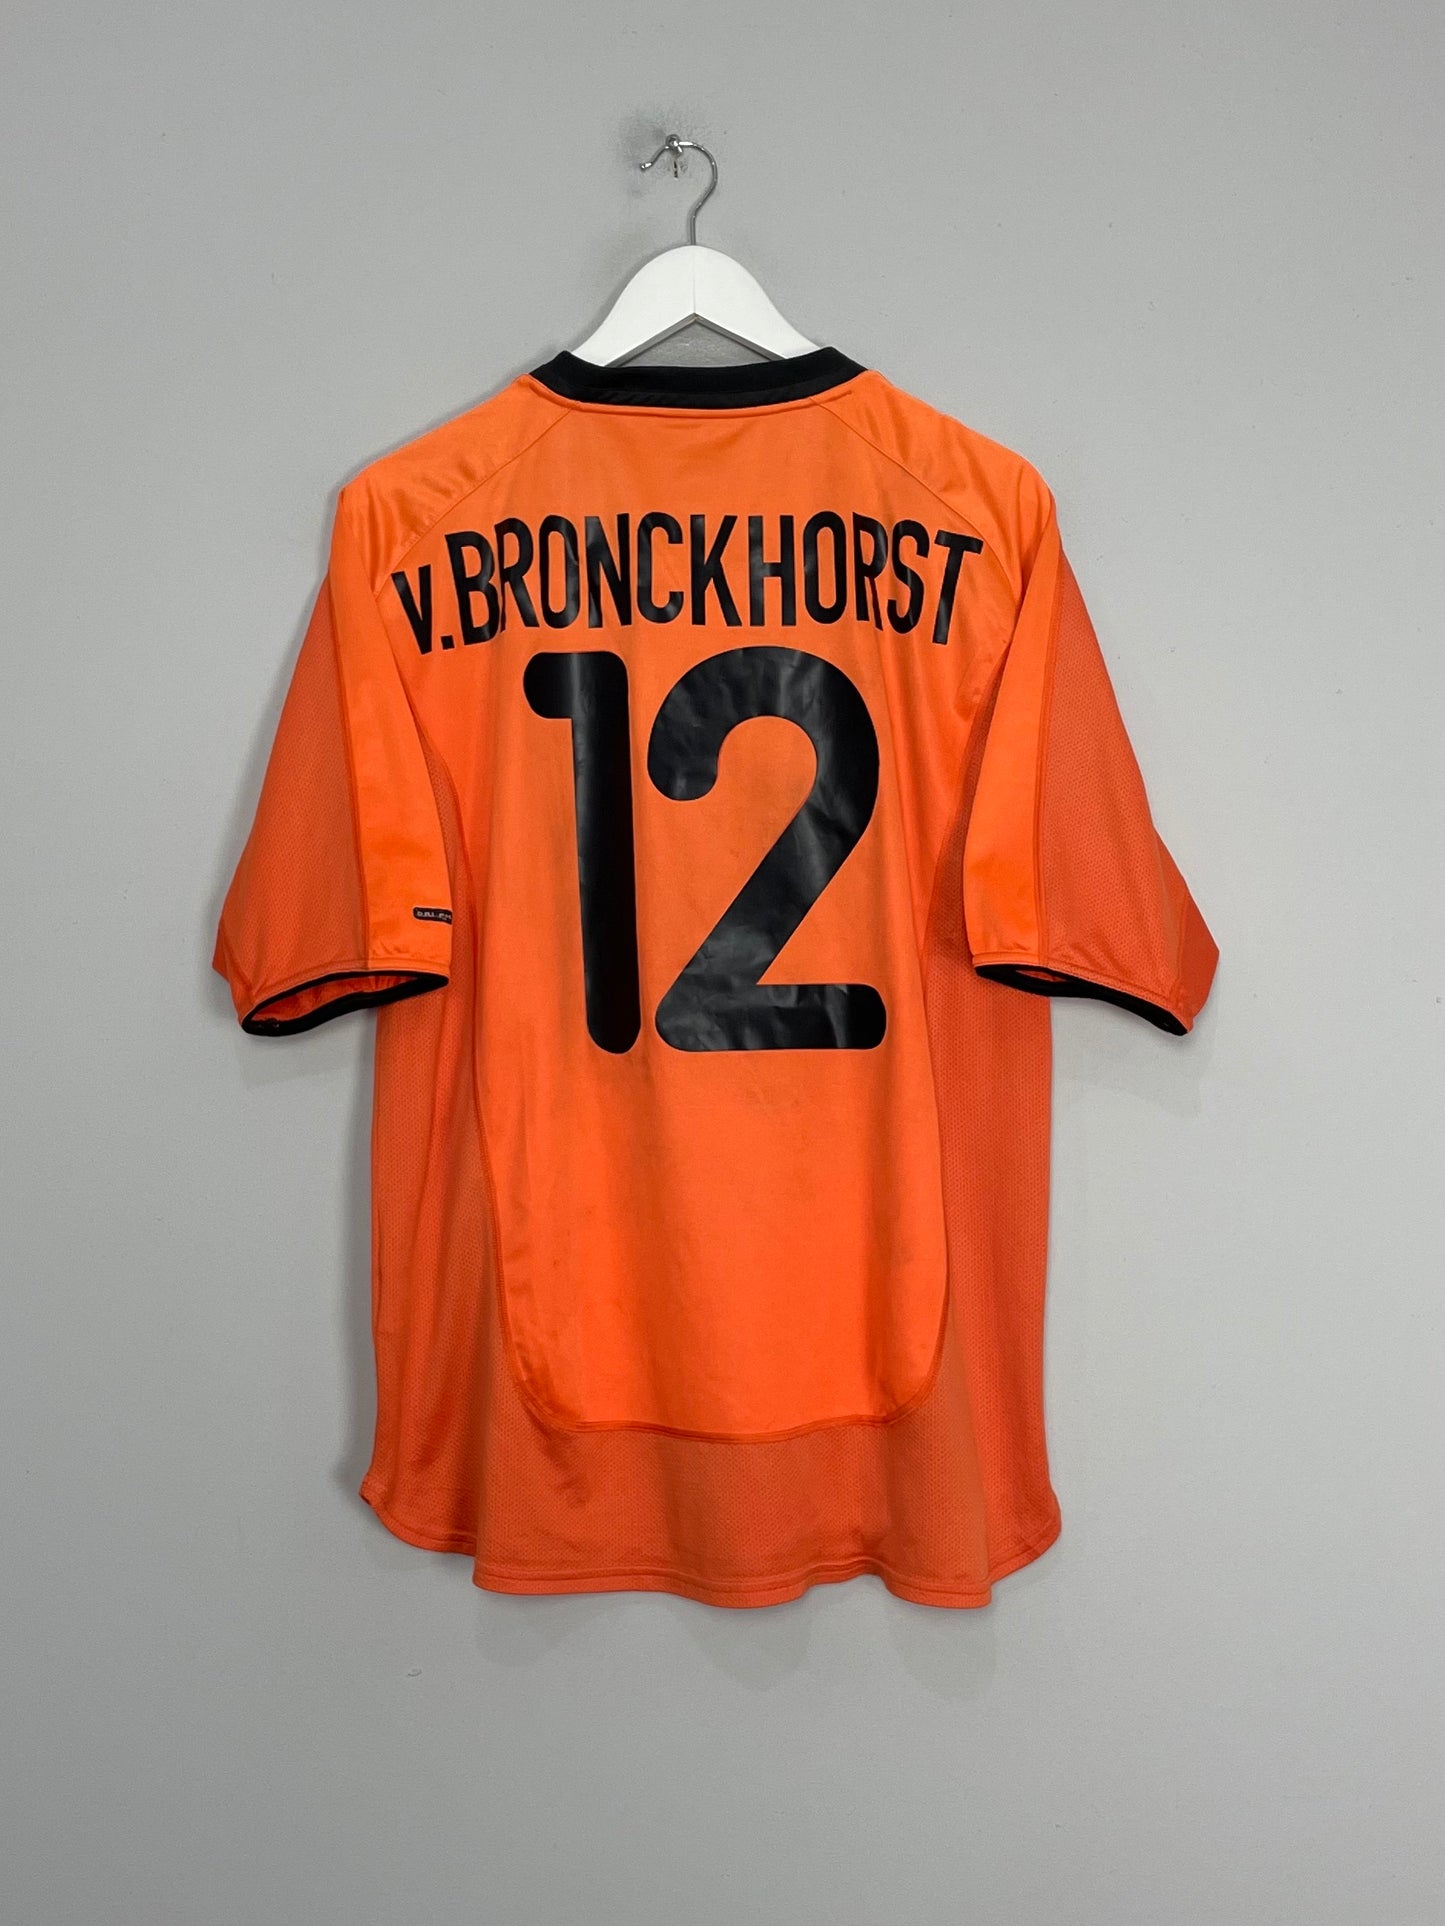  2000/02 NETHERLANDS V.BRONCKHORST #12 HOME SHIRT (M) NIKE